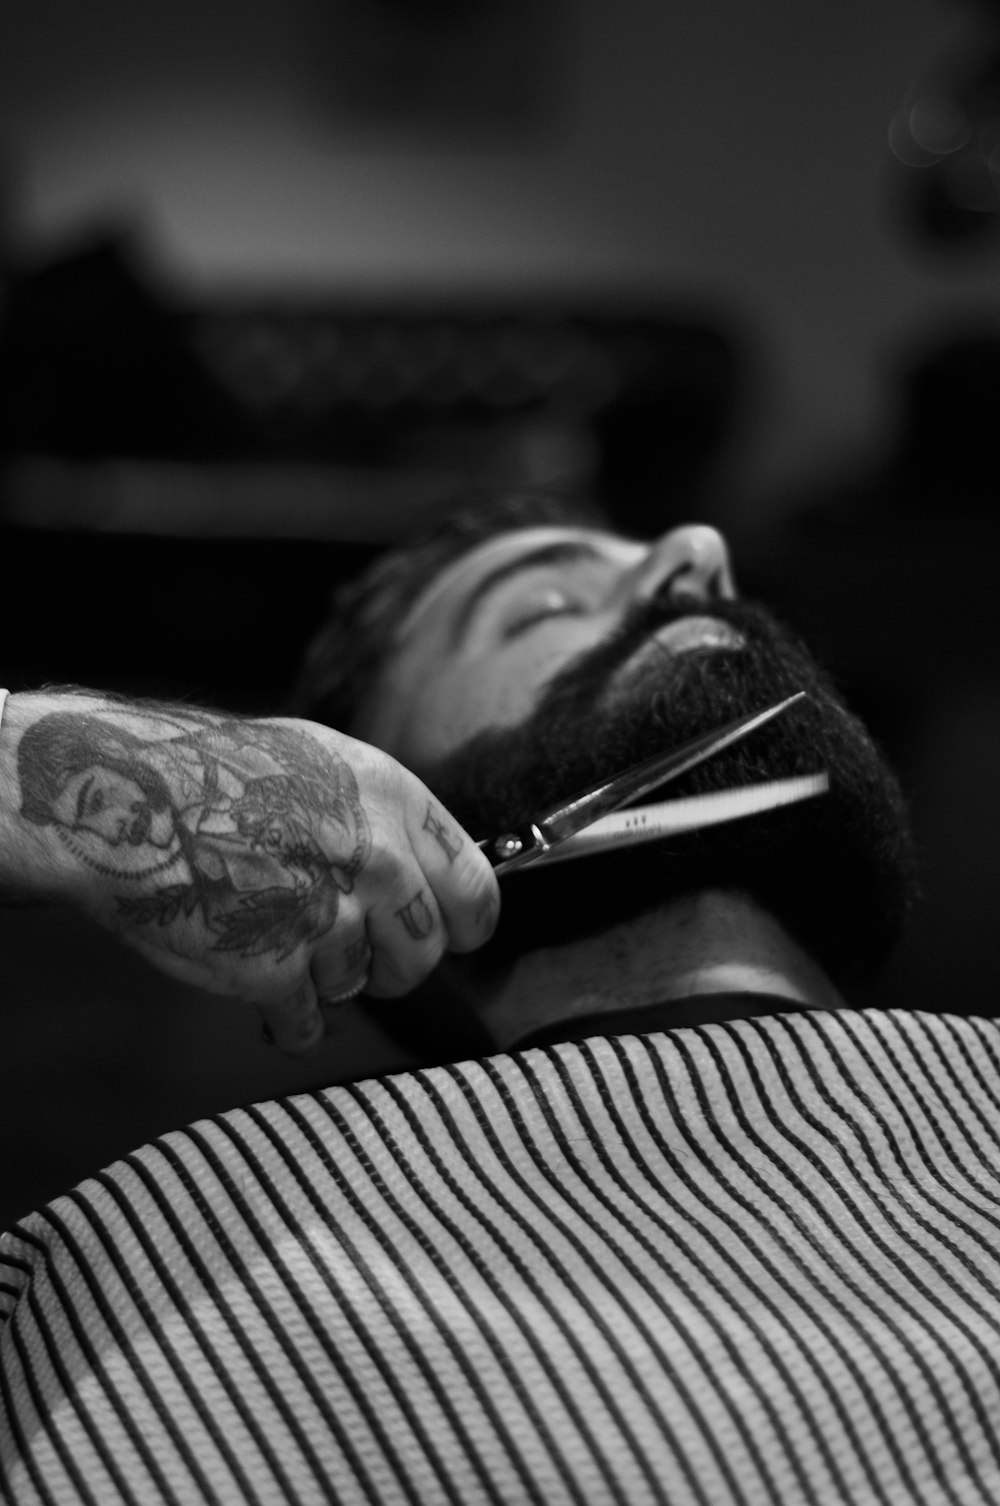 ハサミを刈り取る男のあごひげを持っている人のグレースケール写真